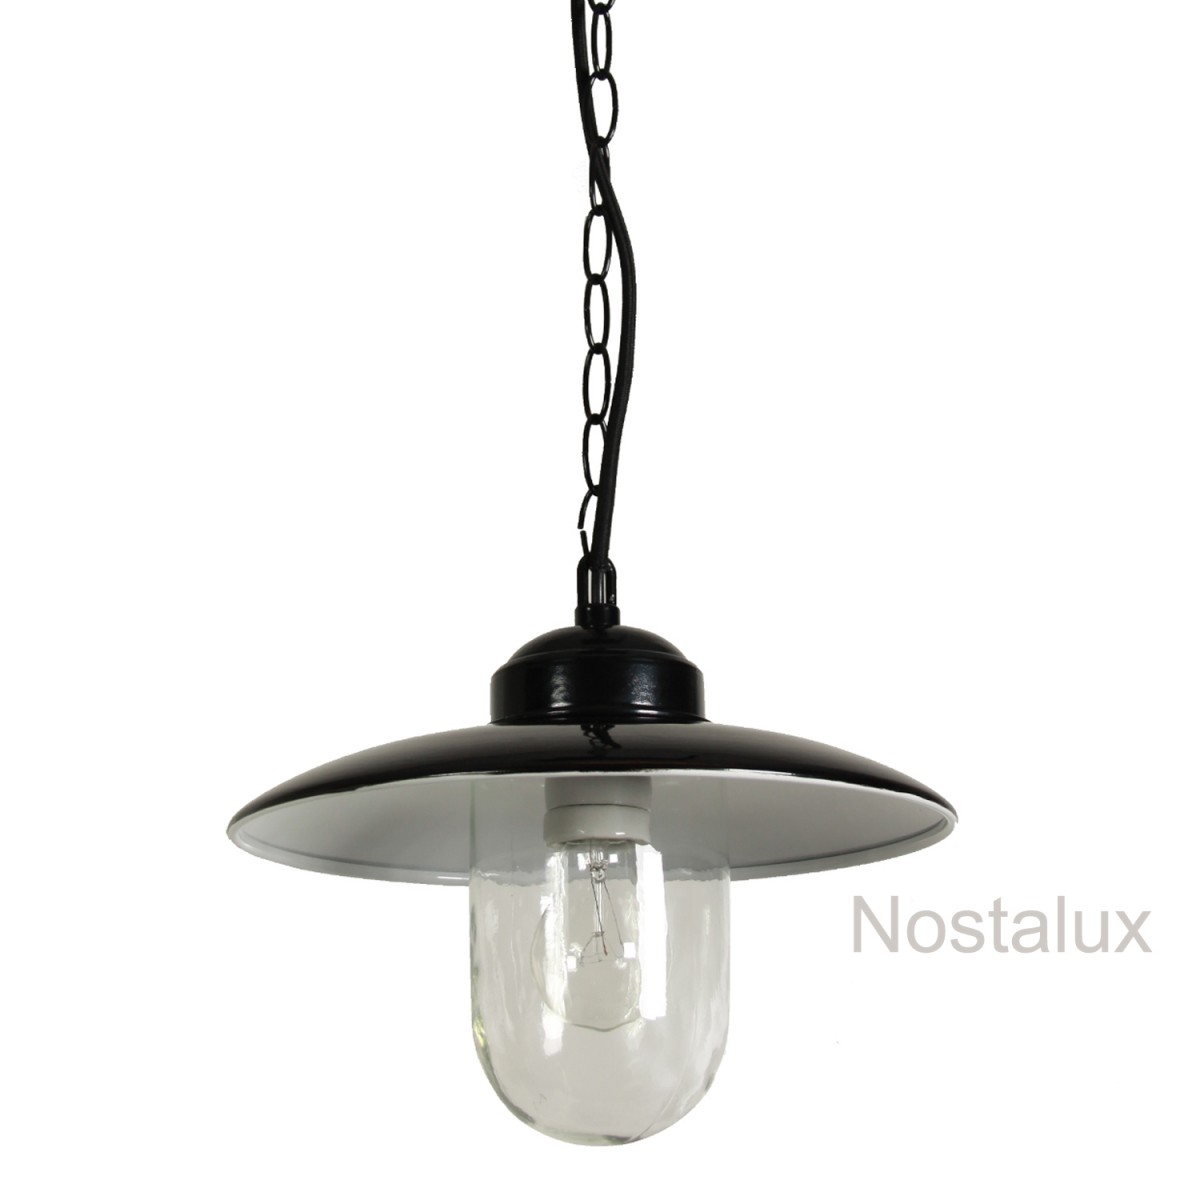 stoer-and-industrieel-hanglamp-solingen-hang-zwart-solhzw-nostalux-8138-1200x1200